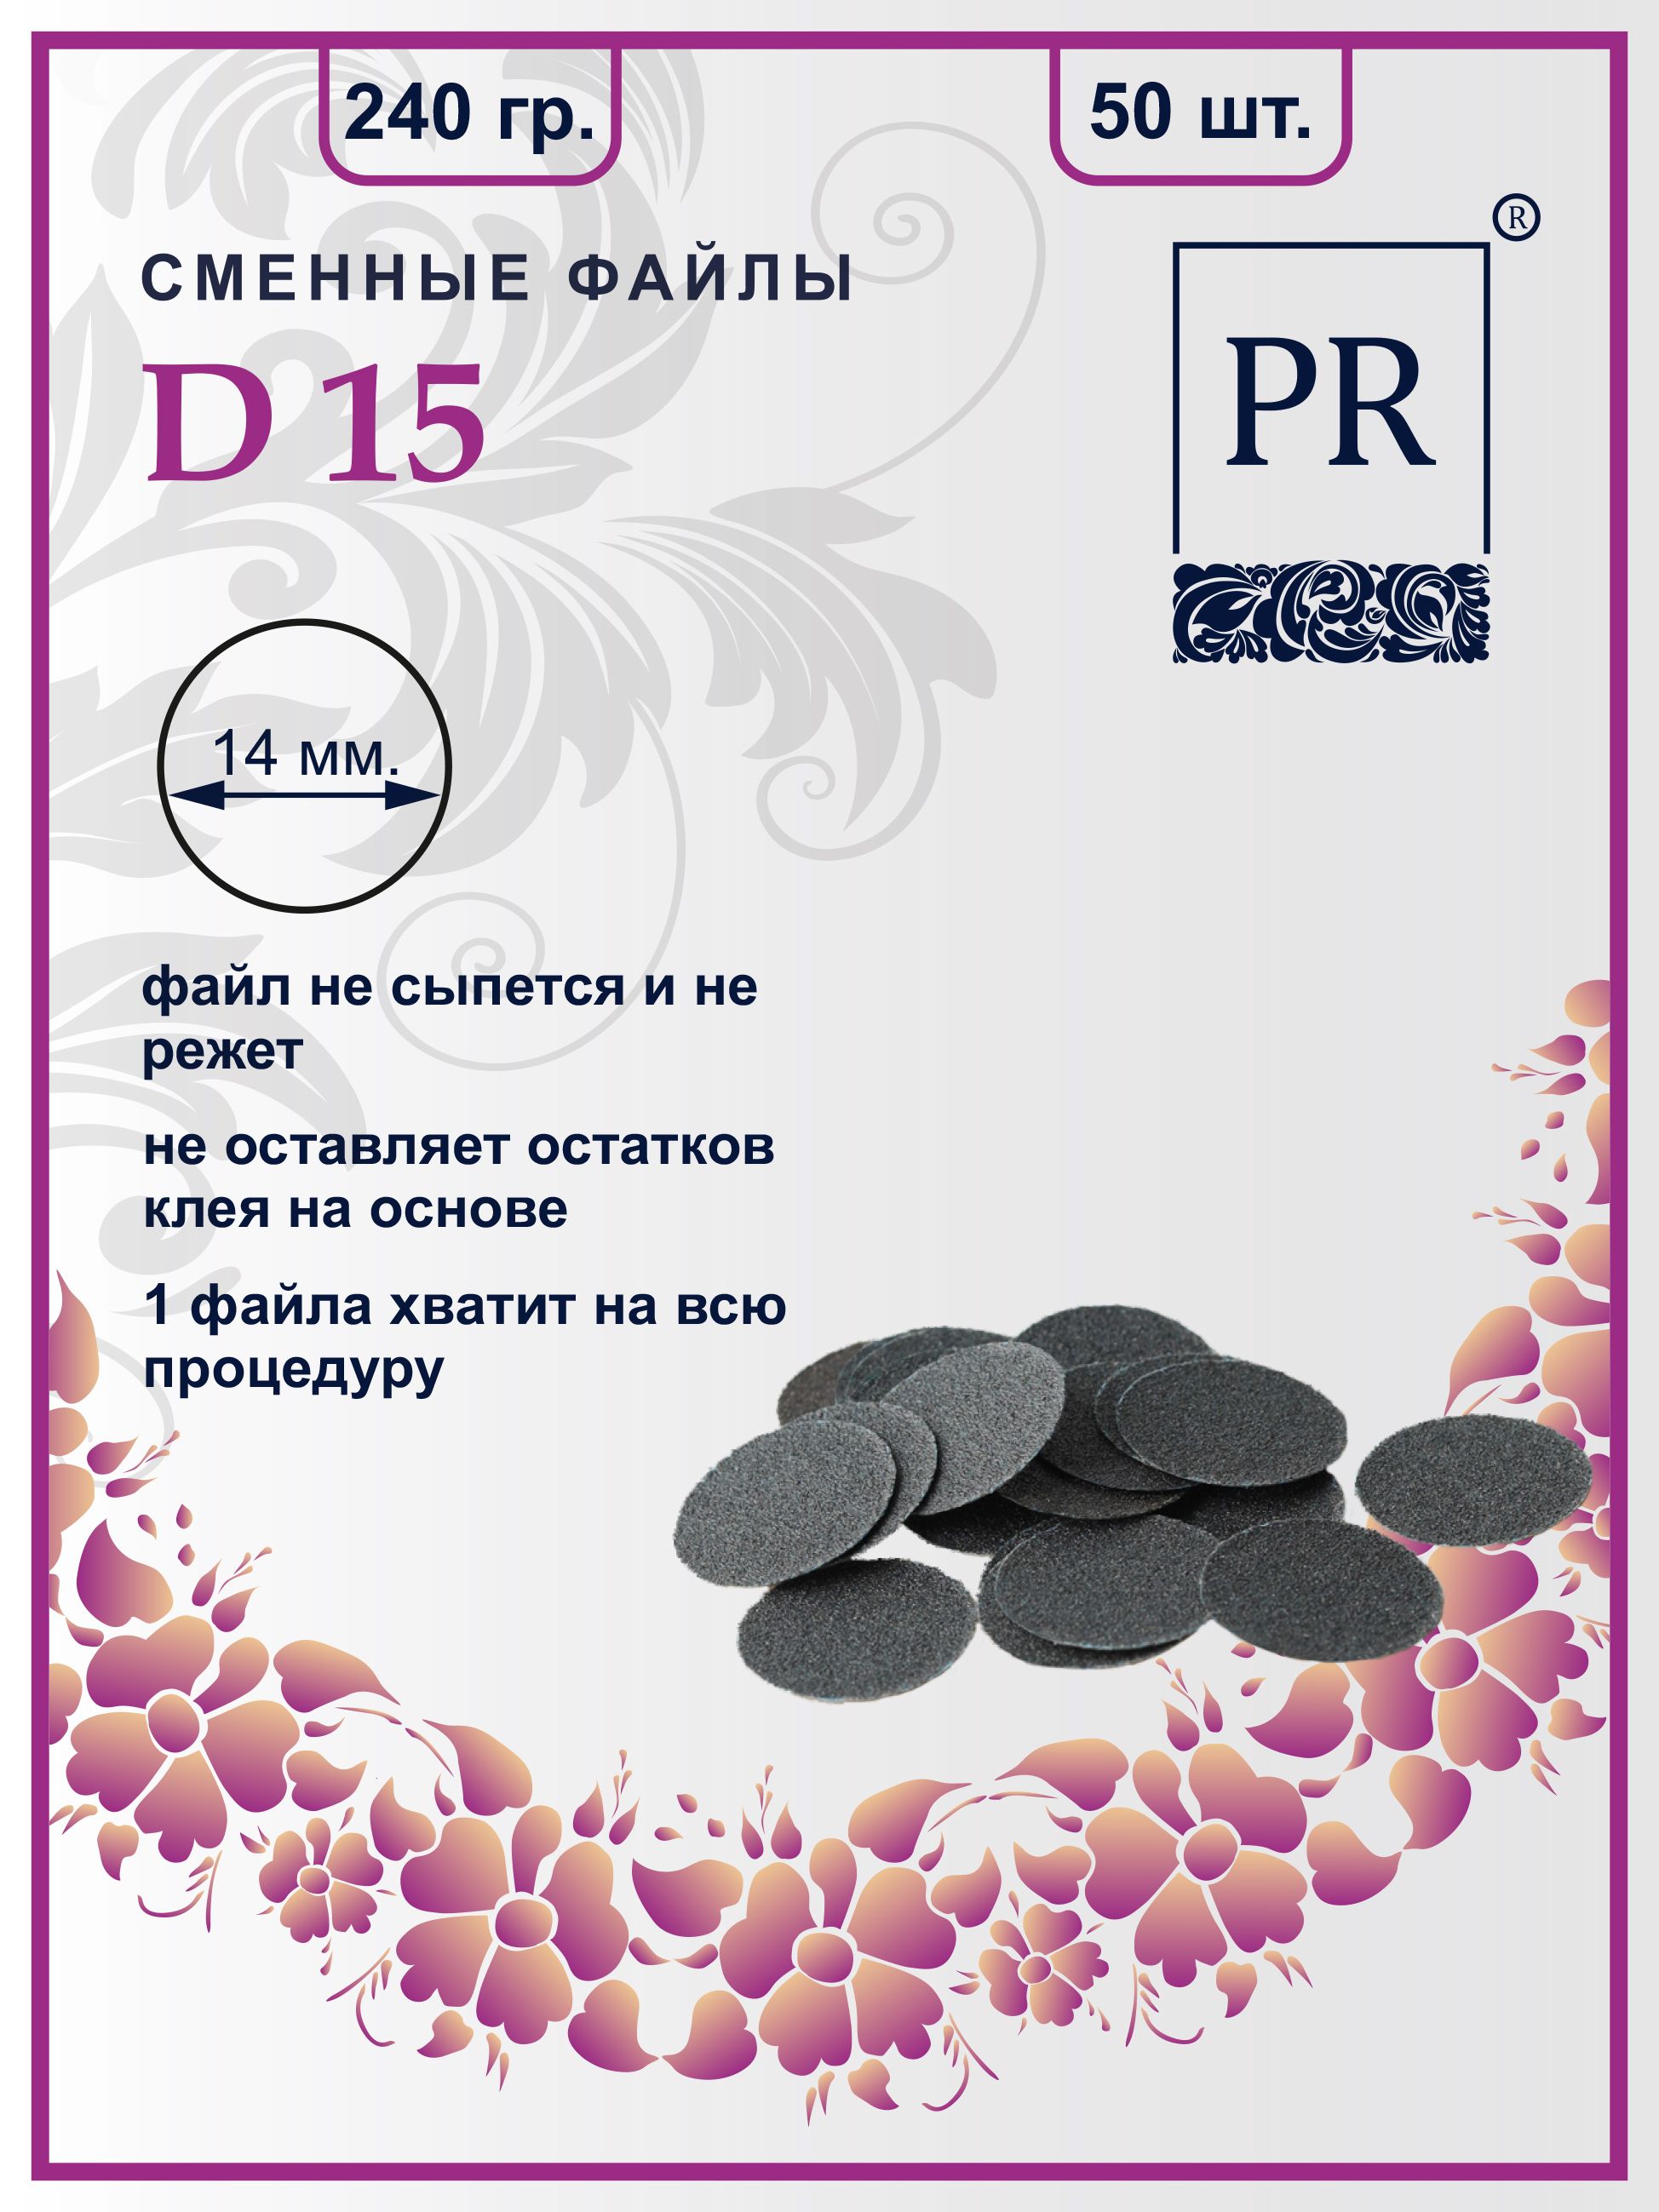 Сменные файлы Pilochki Russia диски для педикюра для диска S 240 грит 50 штук